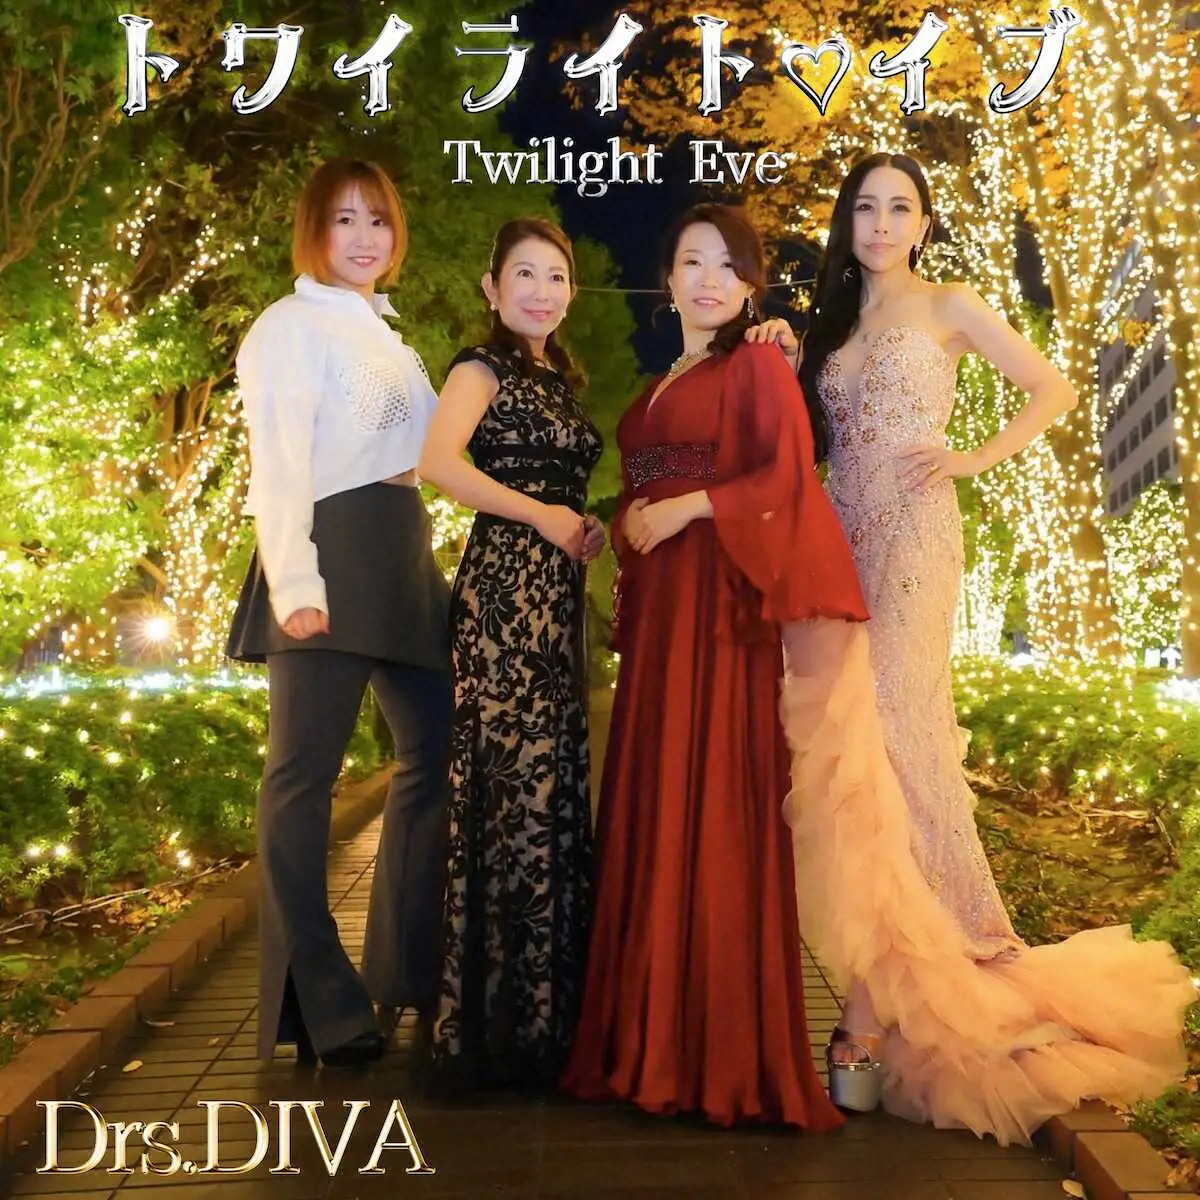 4人組現役女医ユニット「Drs.DIVA」がクリスマスソング「トワイライト・イブ」でデビュー